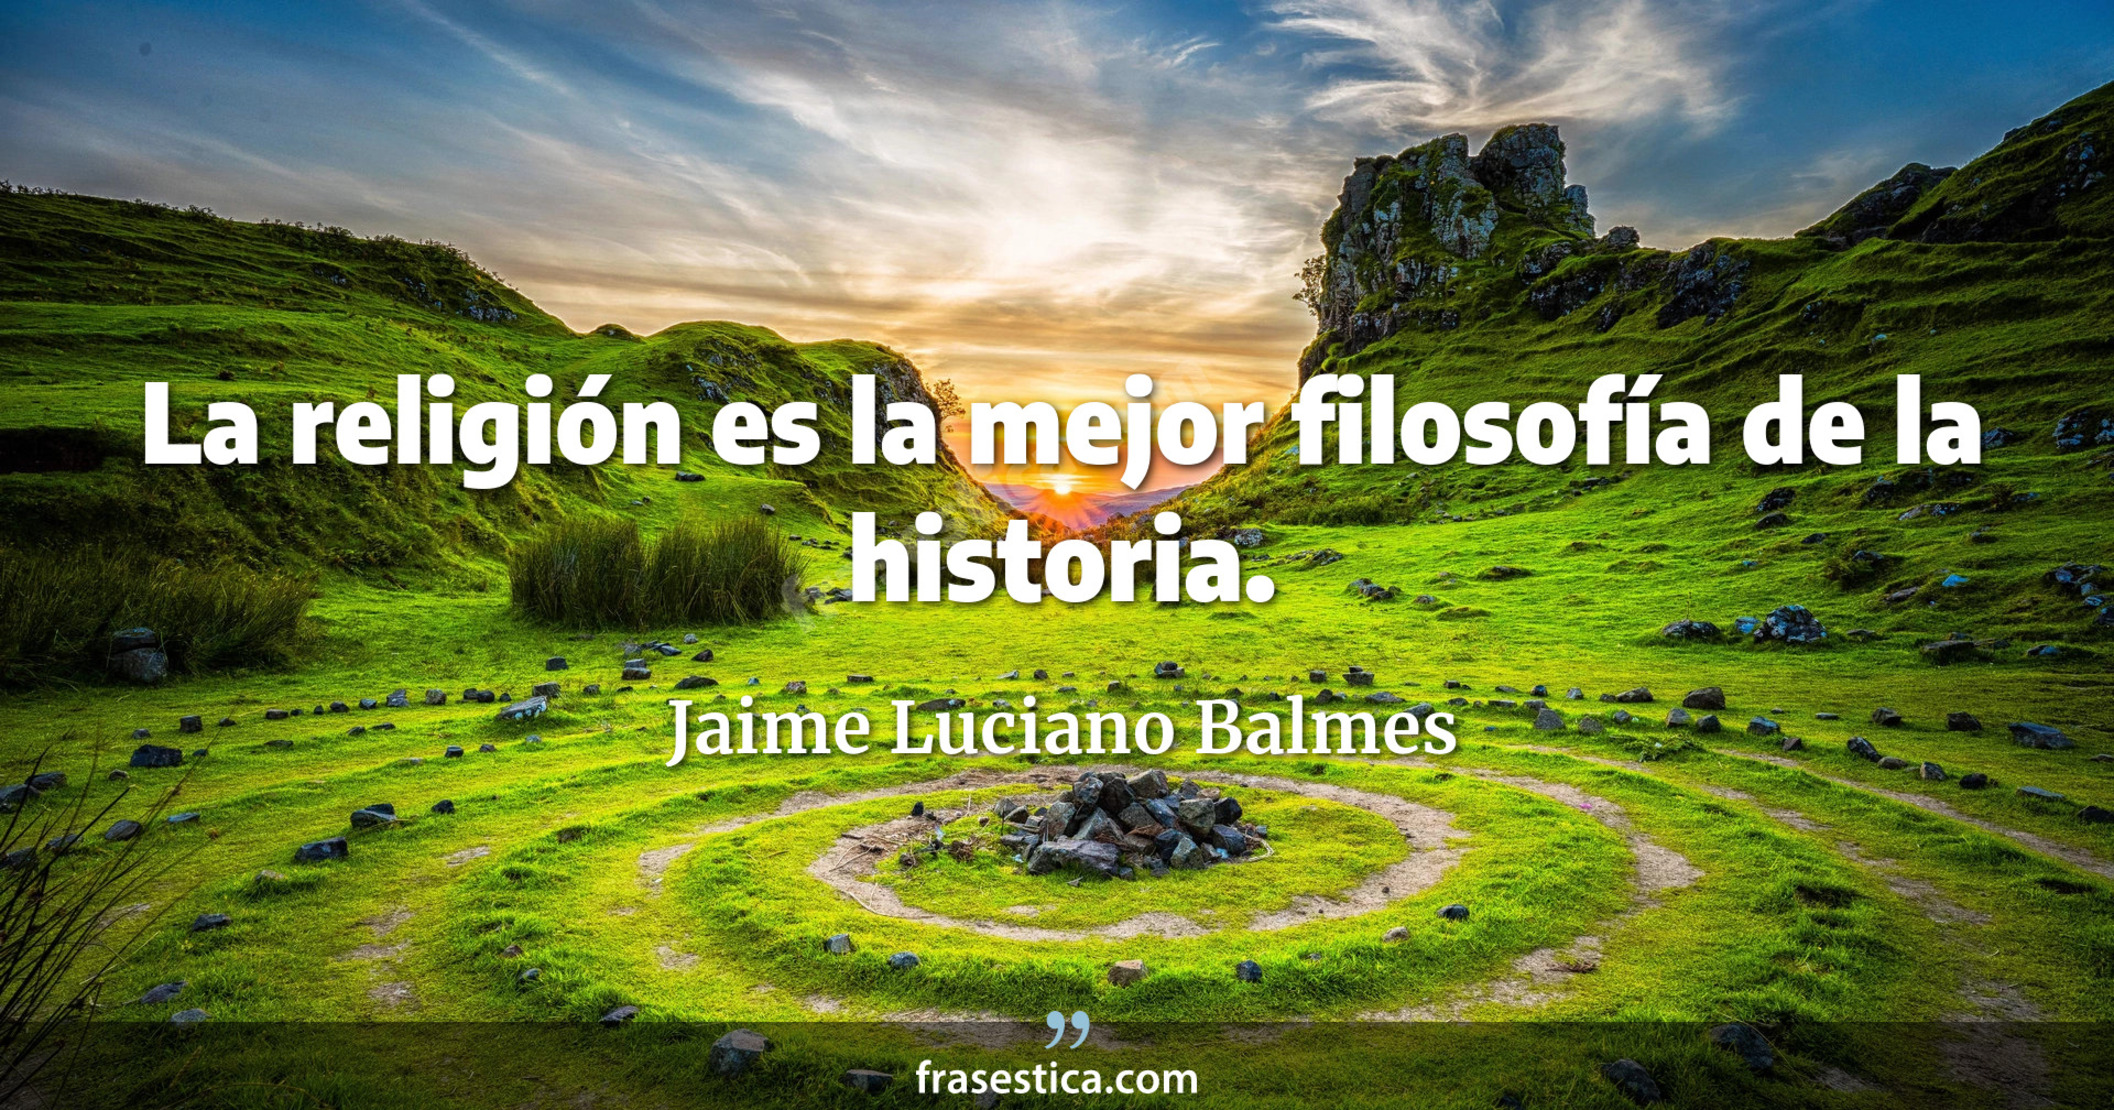 La religión es la mejor filosofía de la historia. - Jaime Luciano Balmes